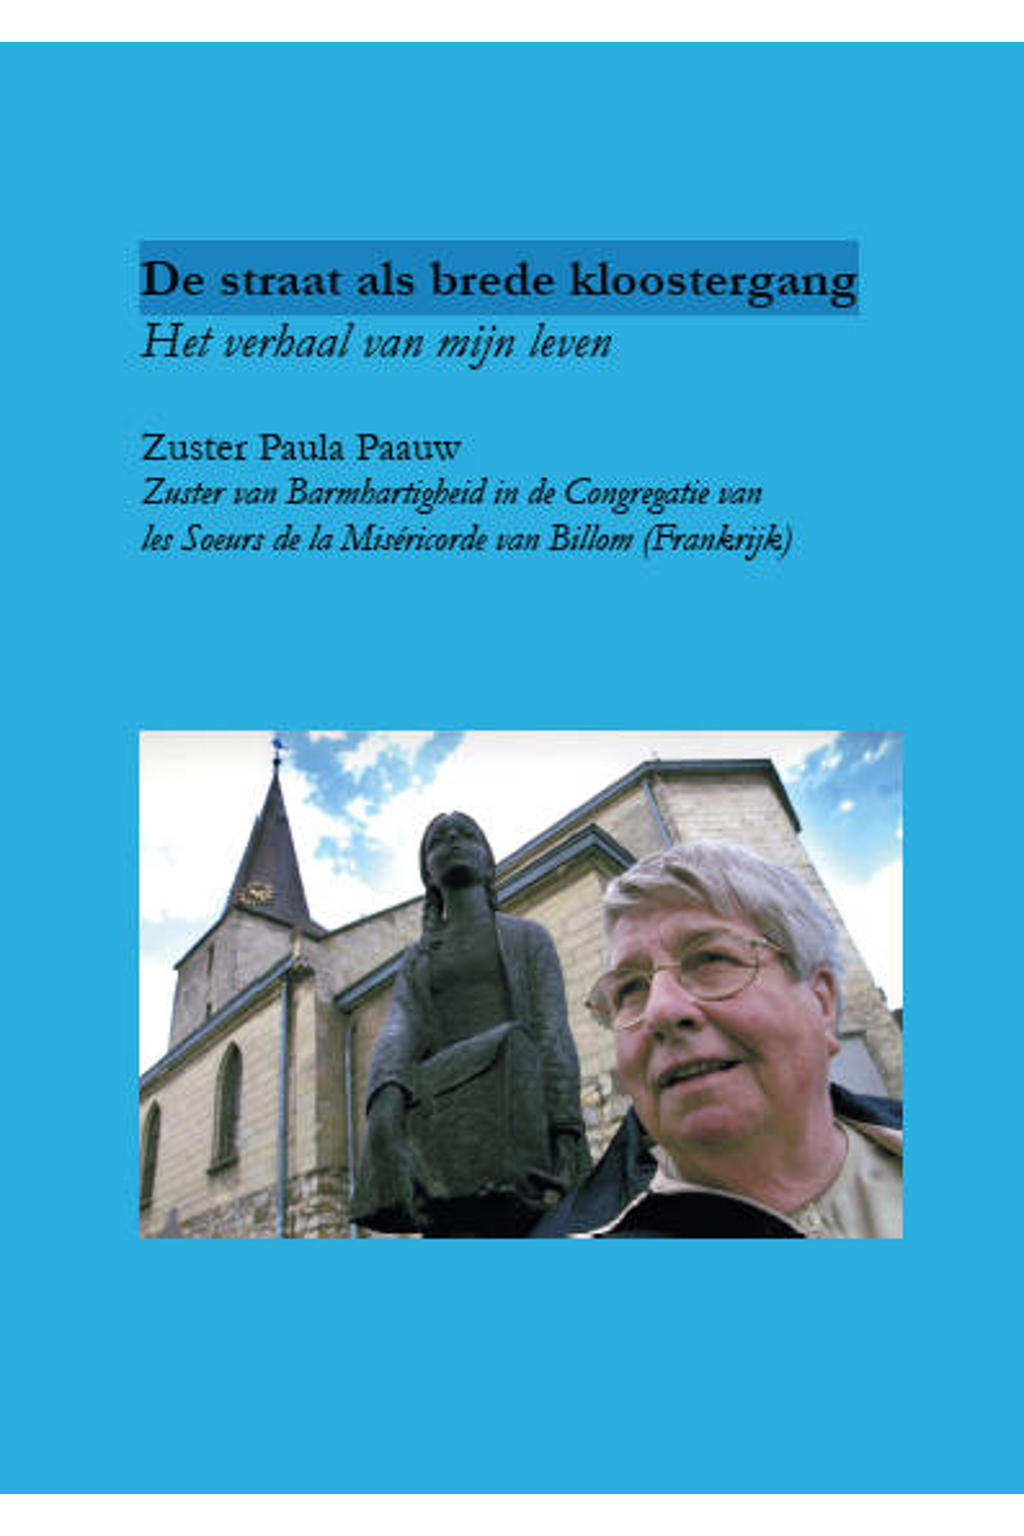 De straat als brede kloostergang - Zuster Paula Paauw